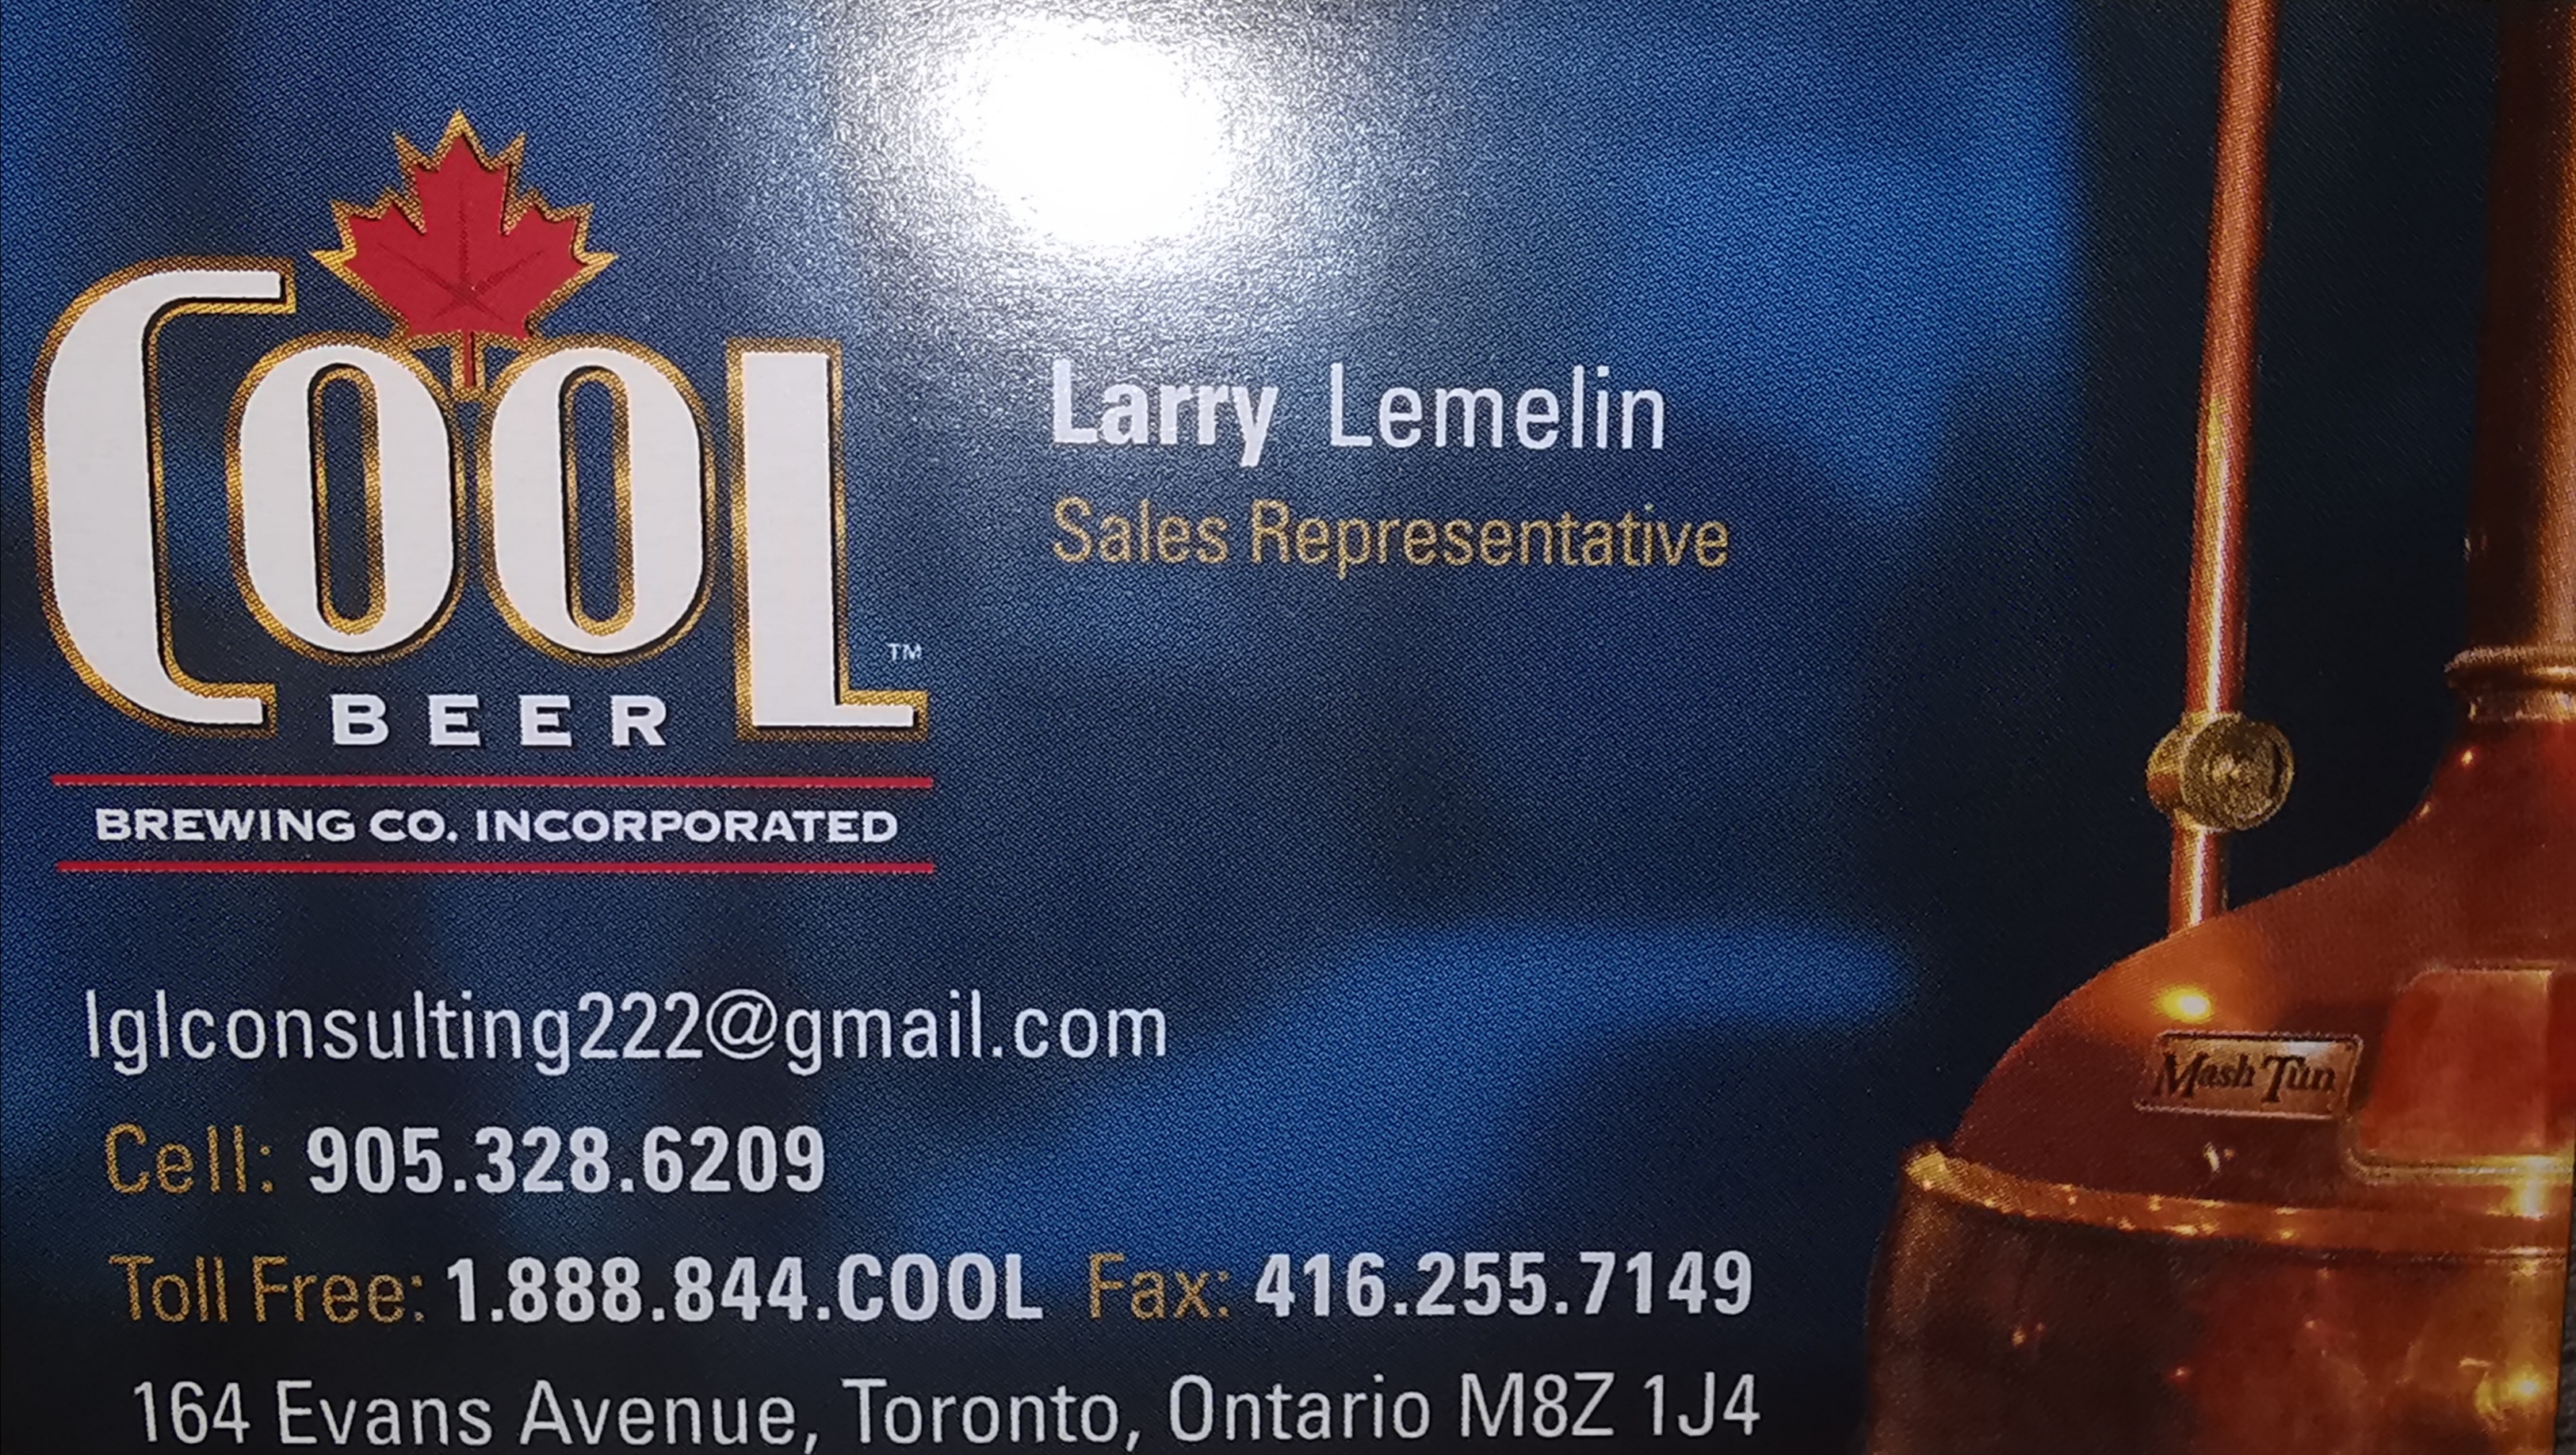 Larry Lemelin - Cool Beer Sales Rep